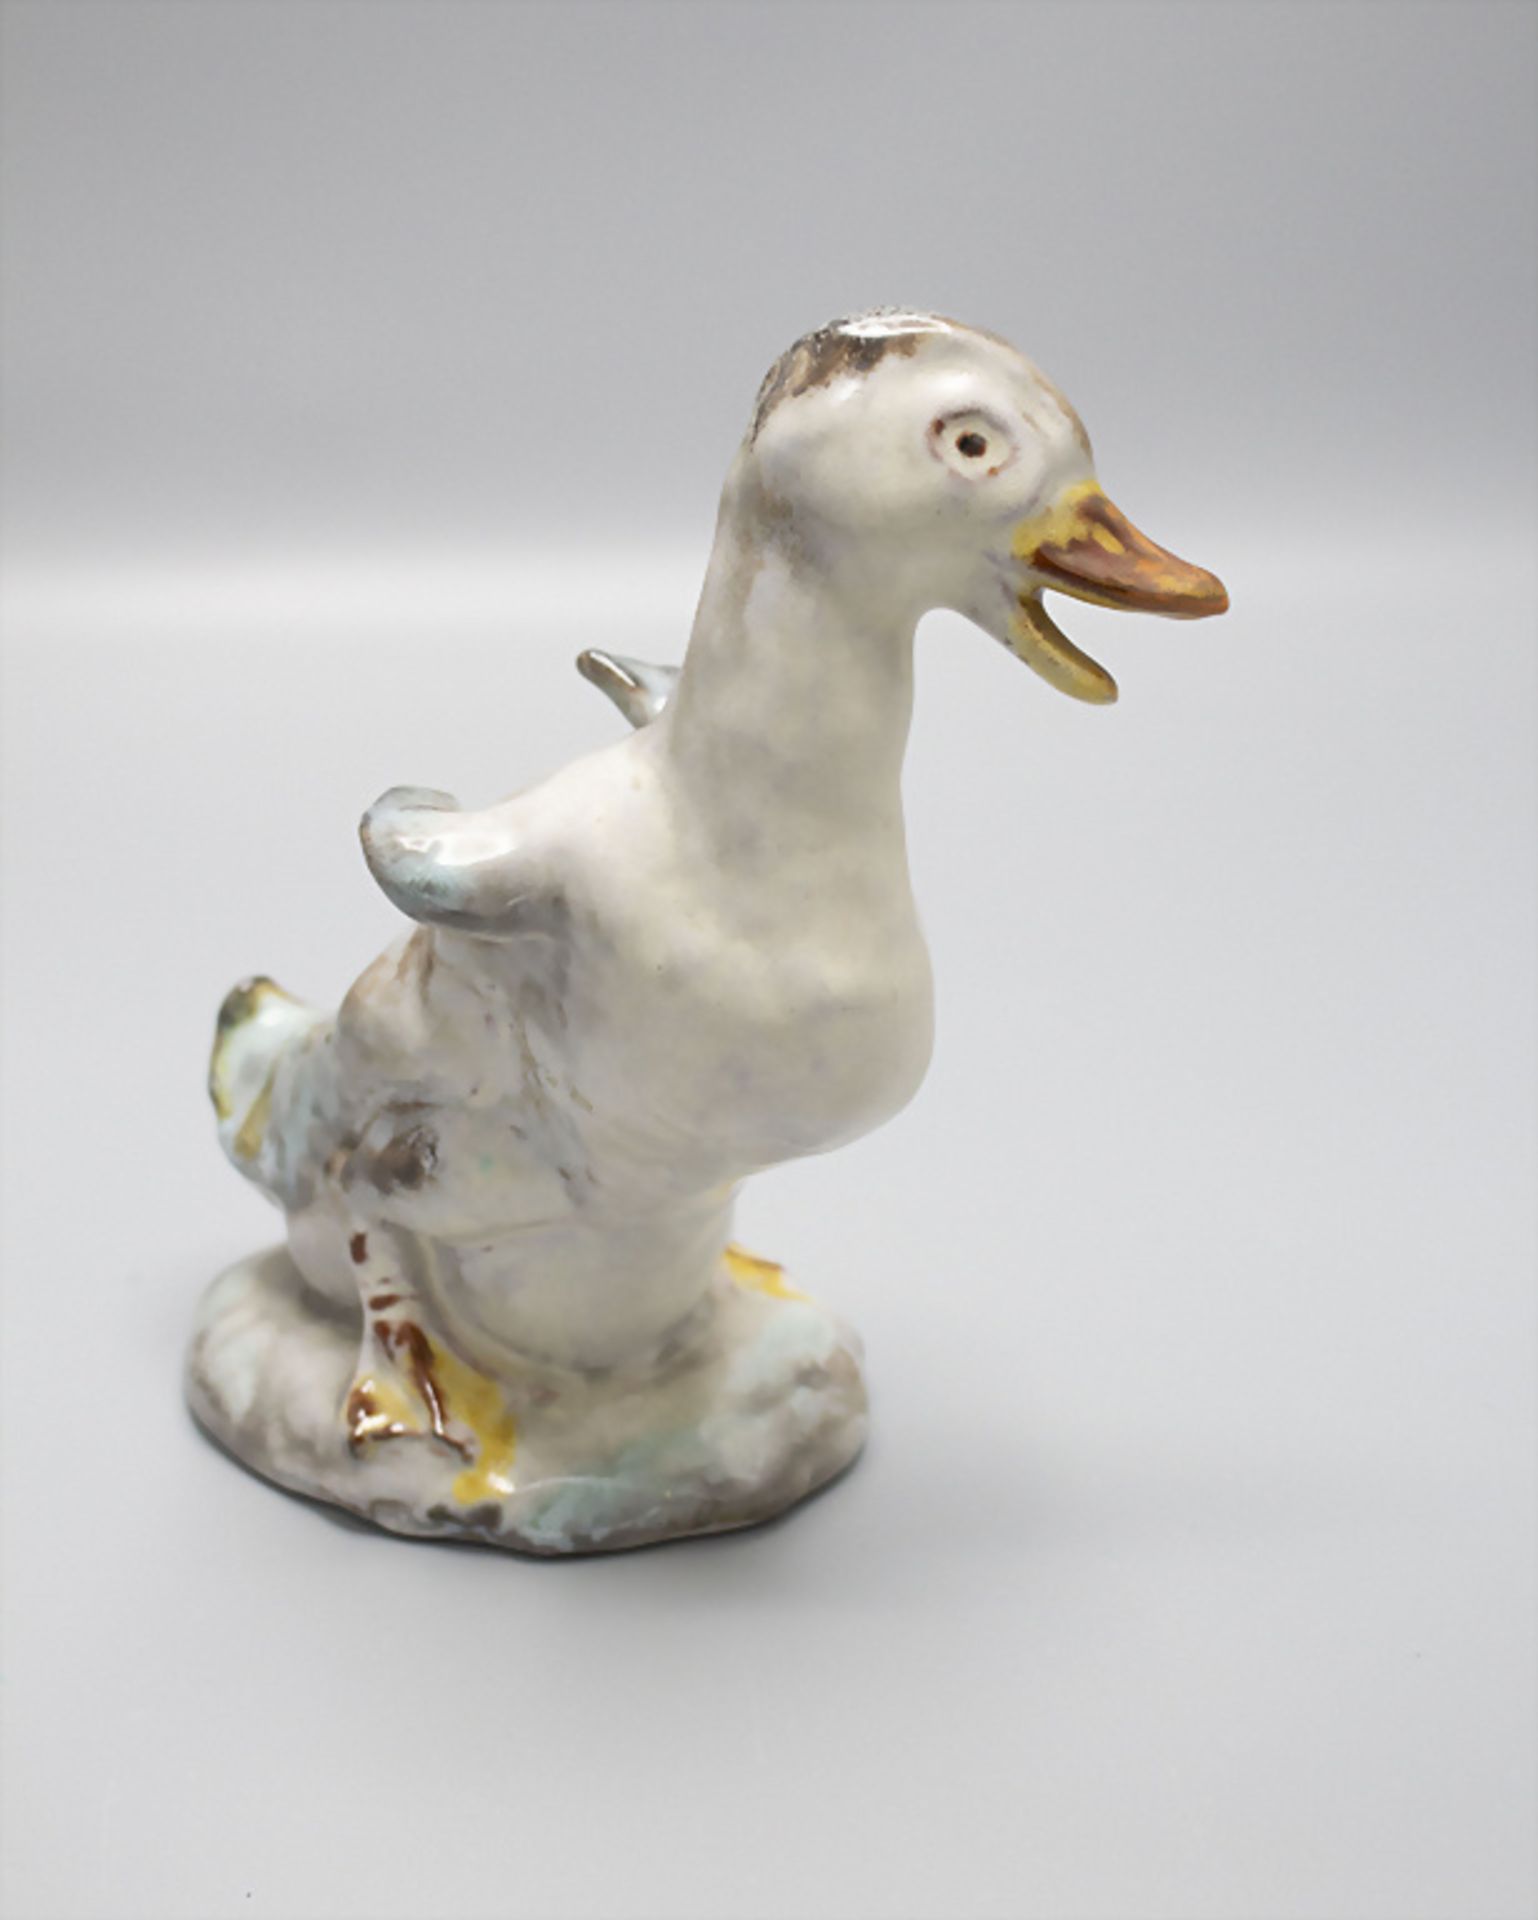 Skulptur 'Entenküken' / A ceramic sculpture of a duckling, Lilly Hummel-König für Karlsruher ... - Image 2 of 4